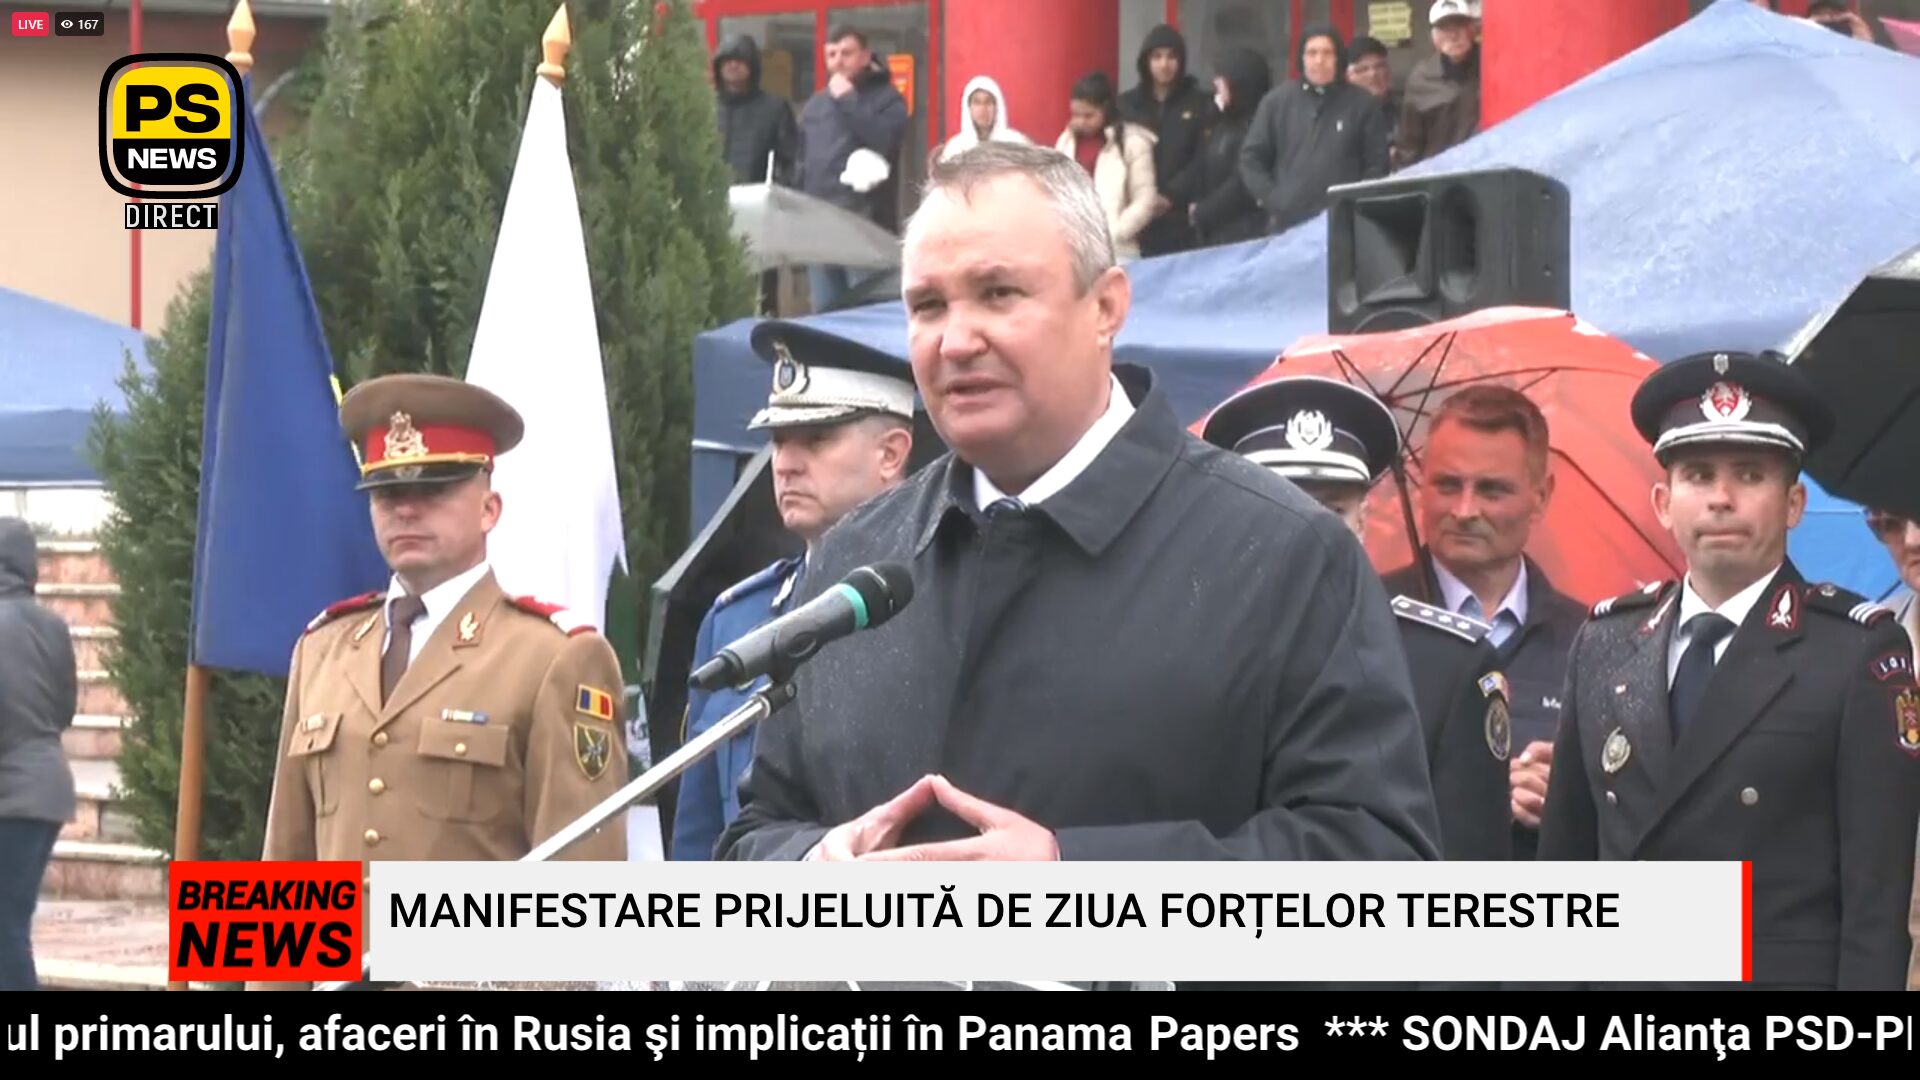 PS News TV | Președintele PNL, Nicolae Ciucă, în direct la PS News TV